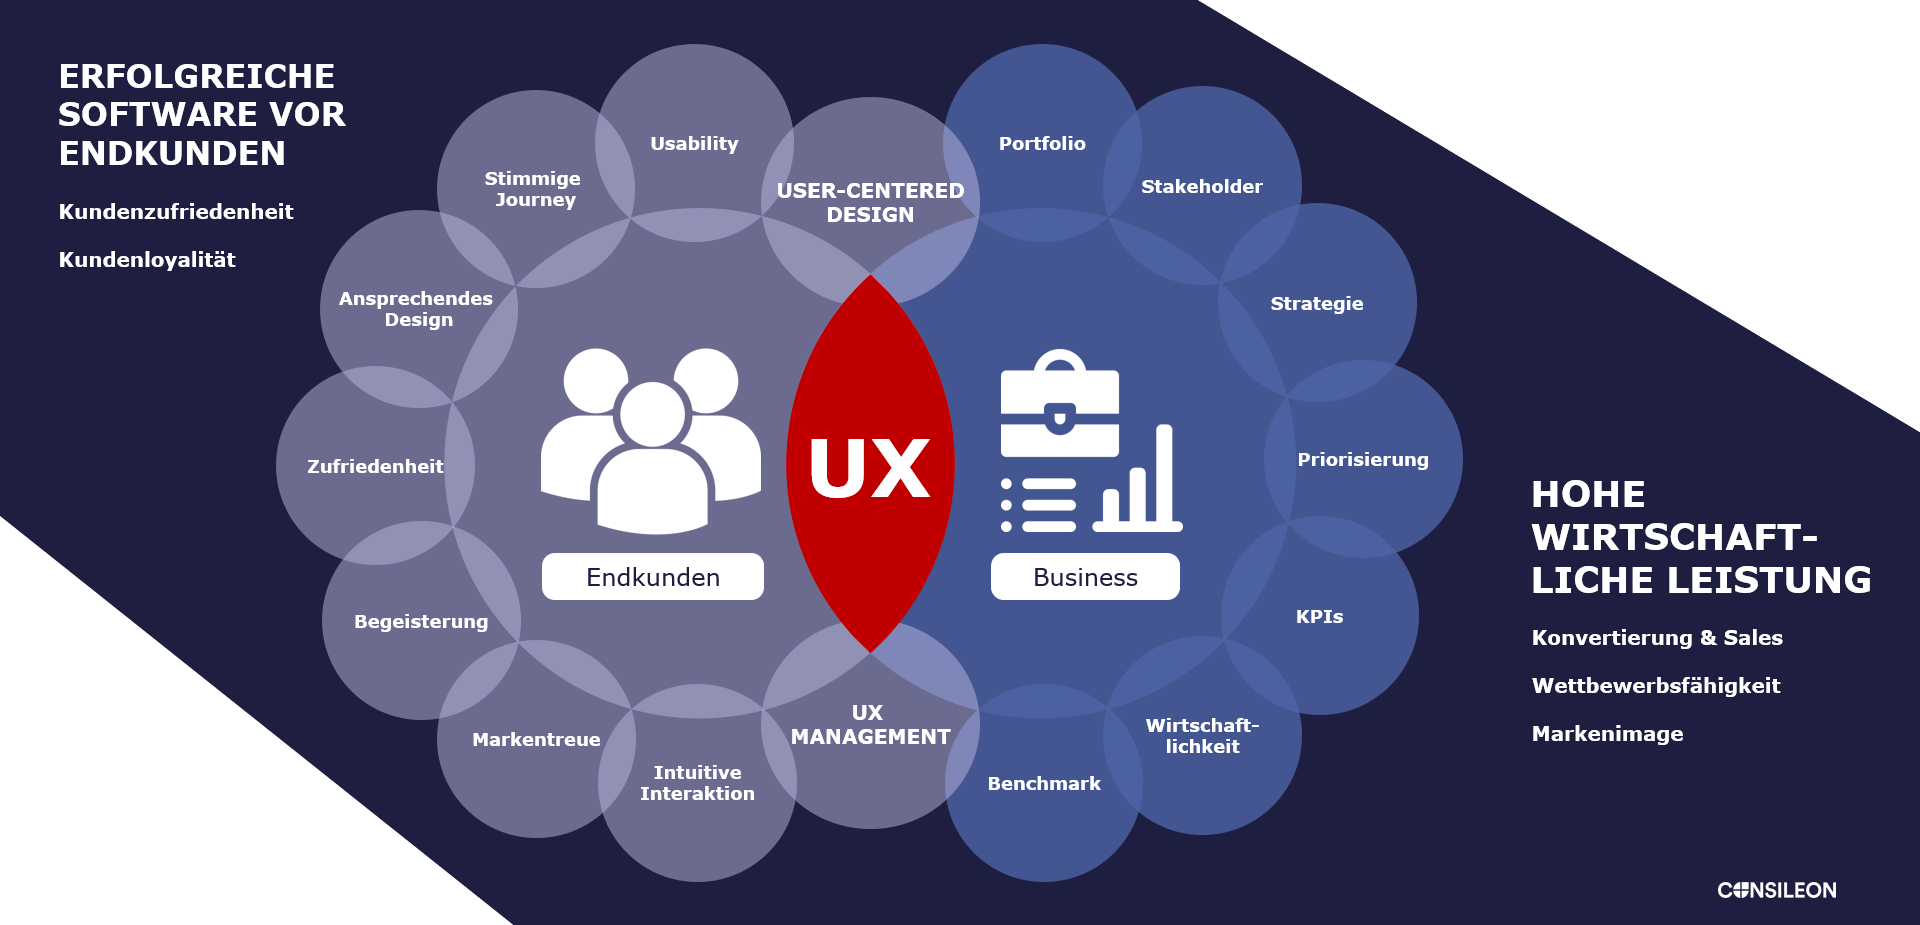 Wie bewerten Kunden gute Software und welche Rolle spielt dabei die User Experience oder UX